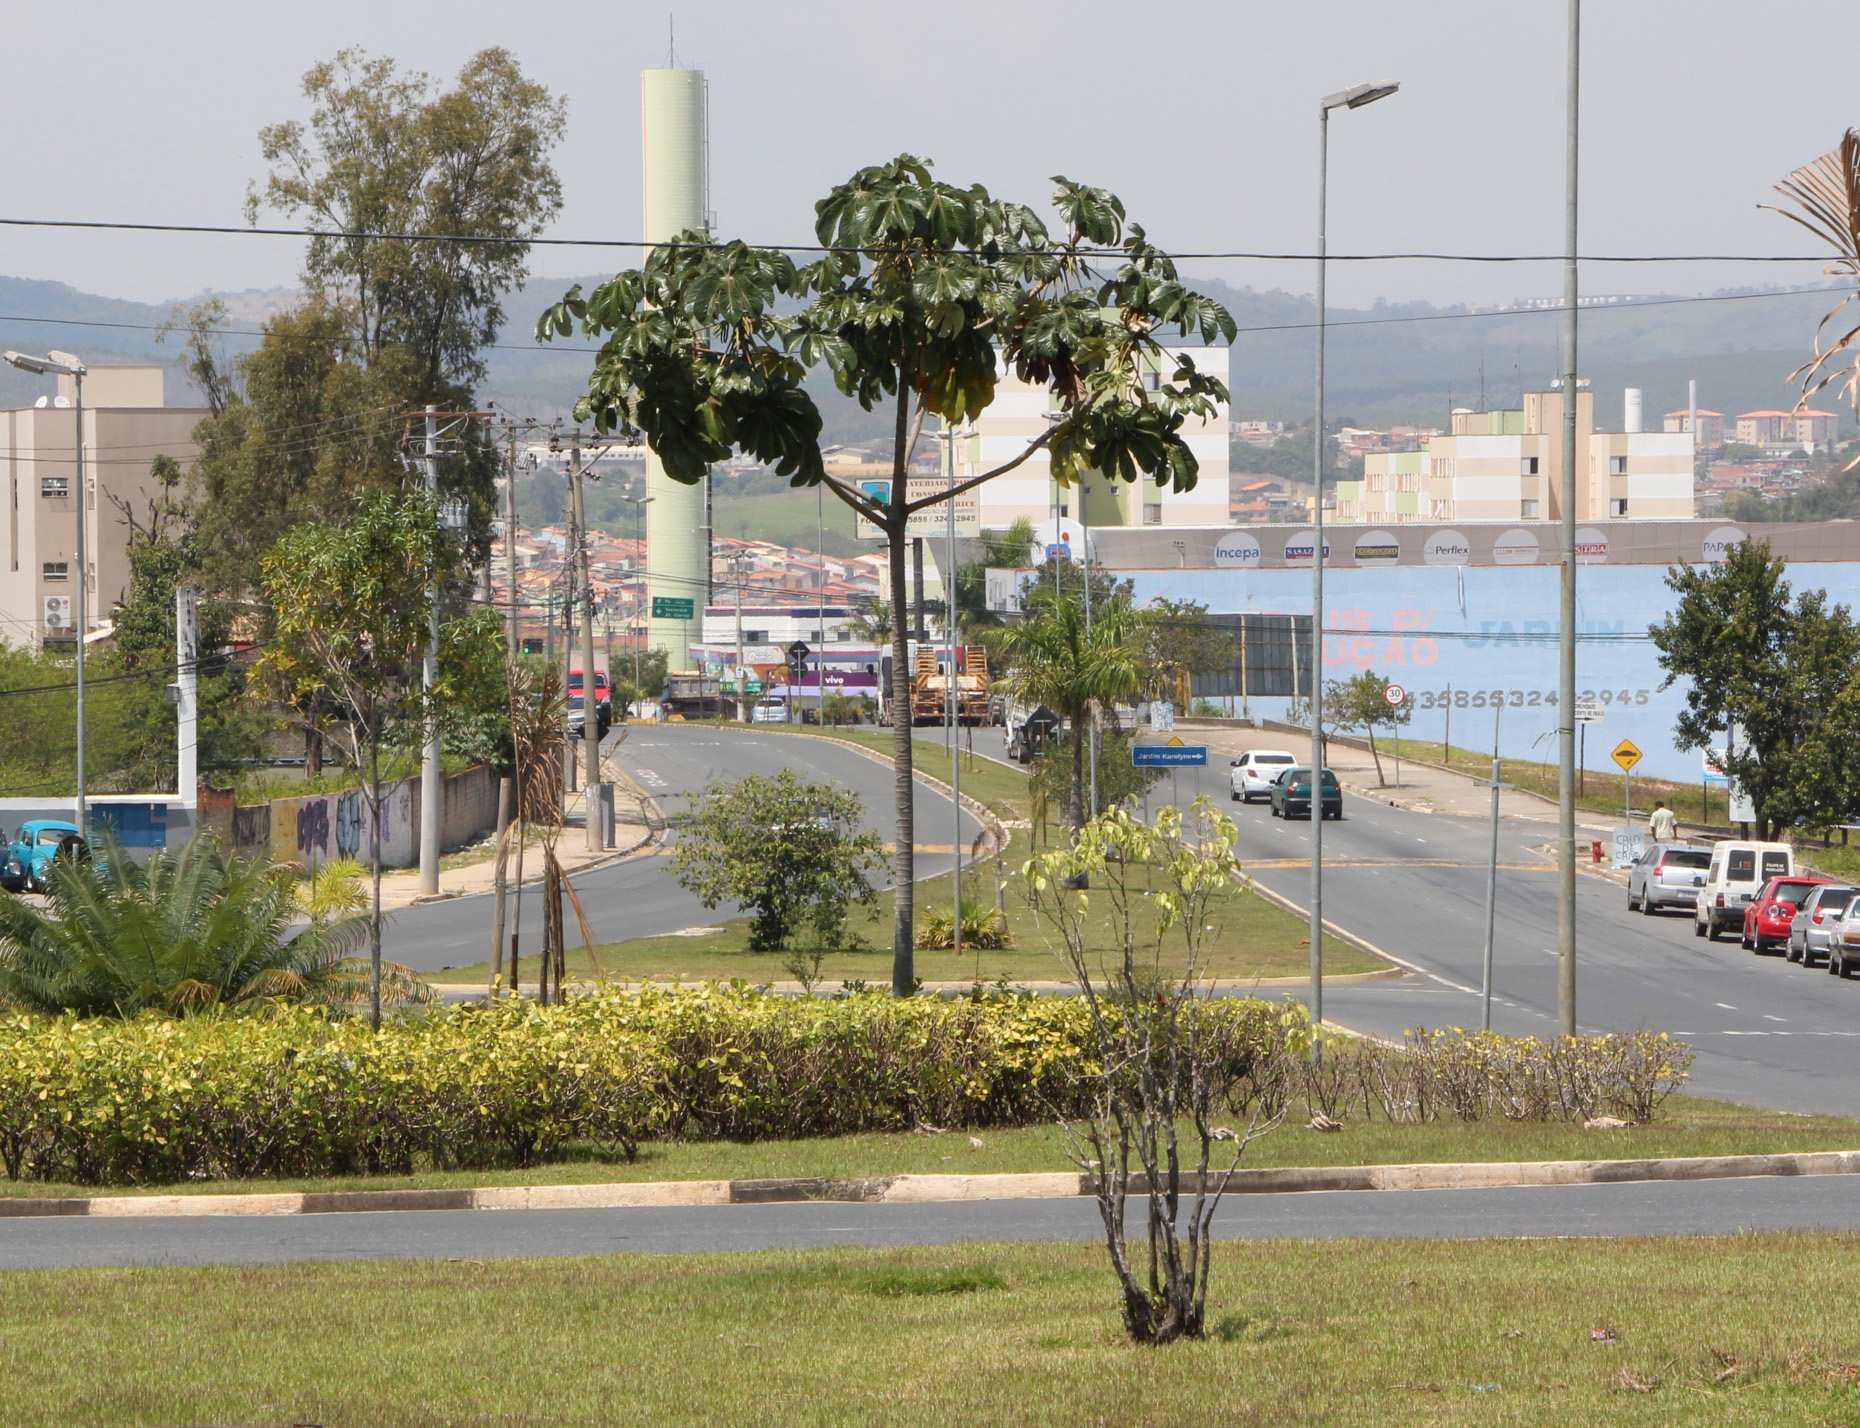 Desde 2003, governo federal investiu R$ 35 milhões em pavimentação na região de Sorocaba